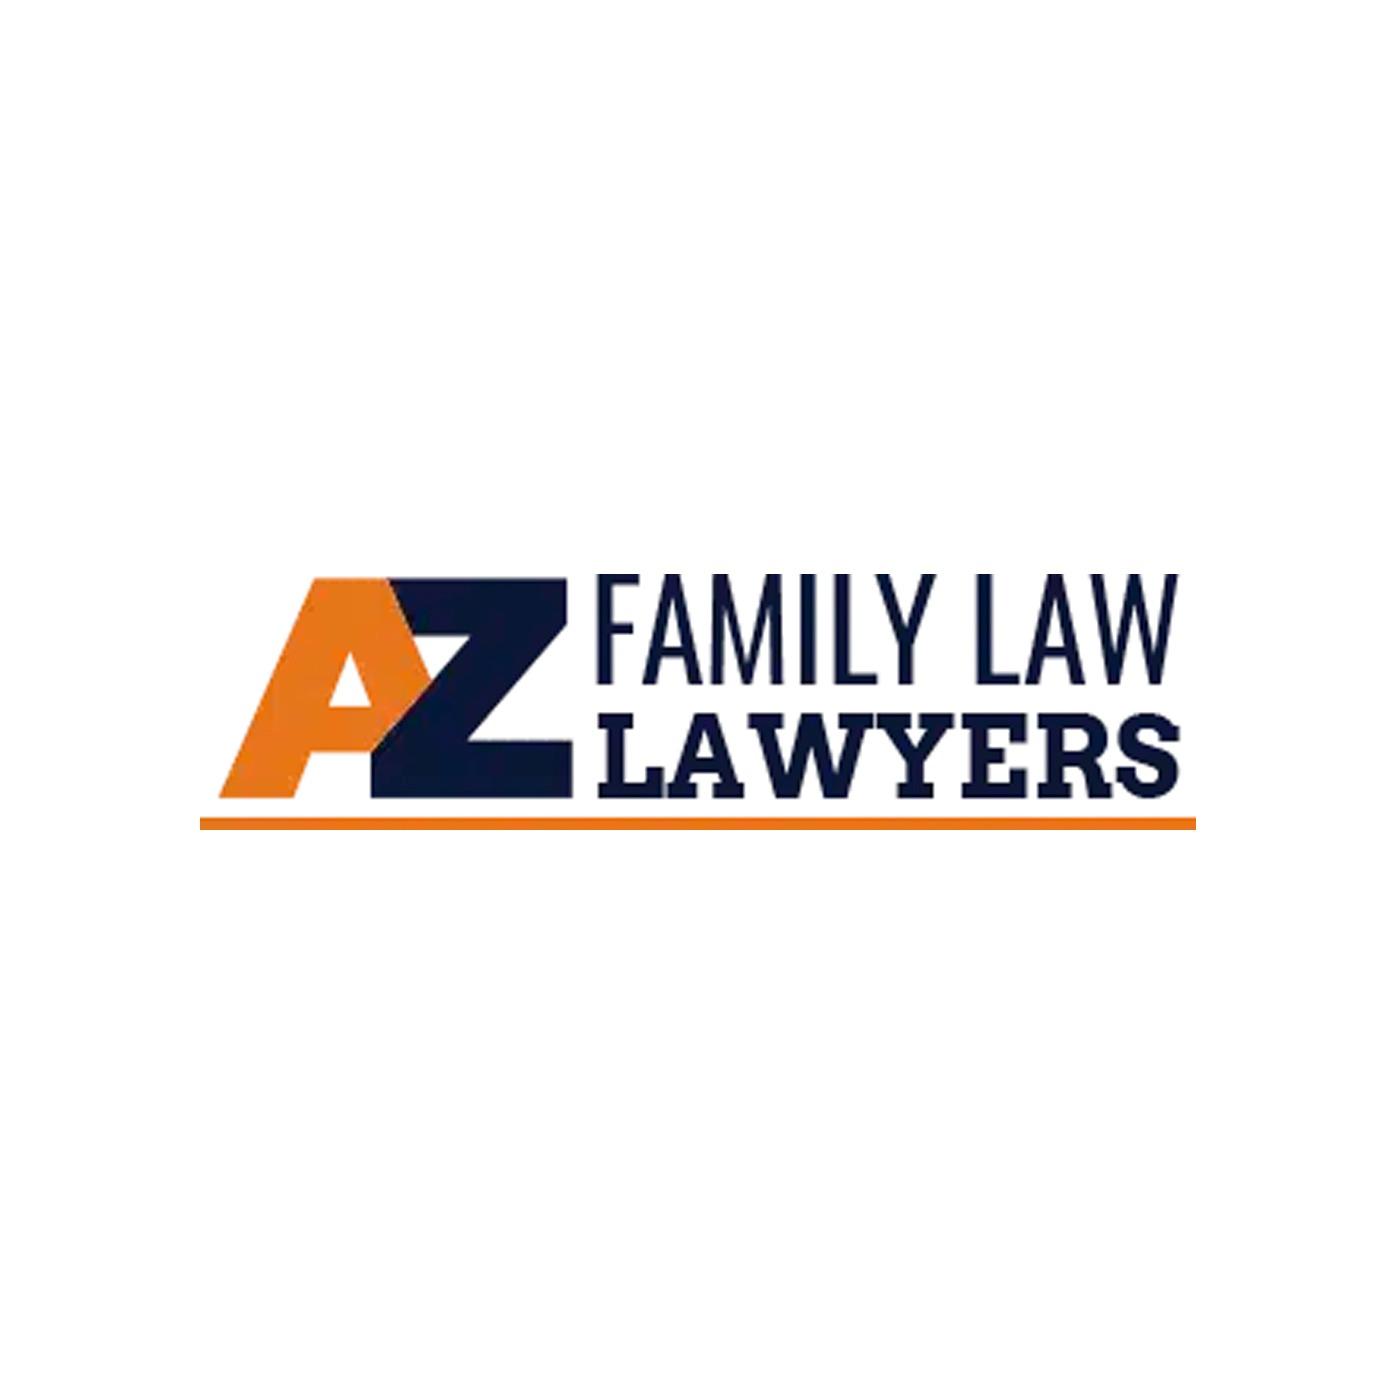 AZ Family Law Lawyers | Arizona Law Firm